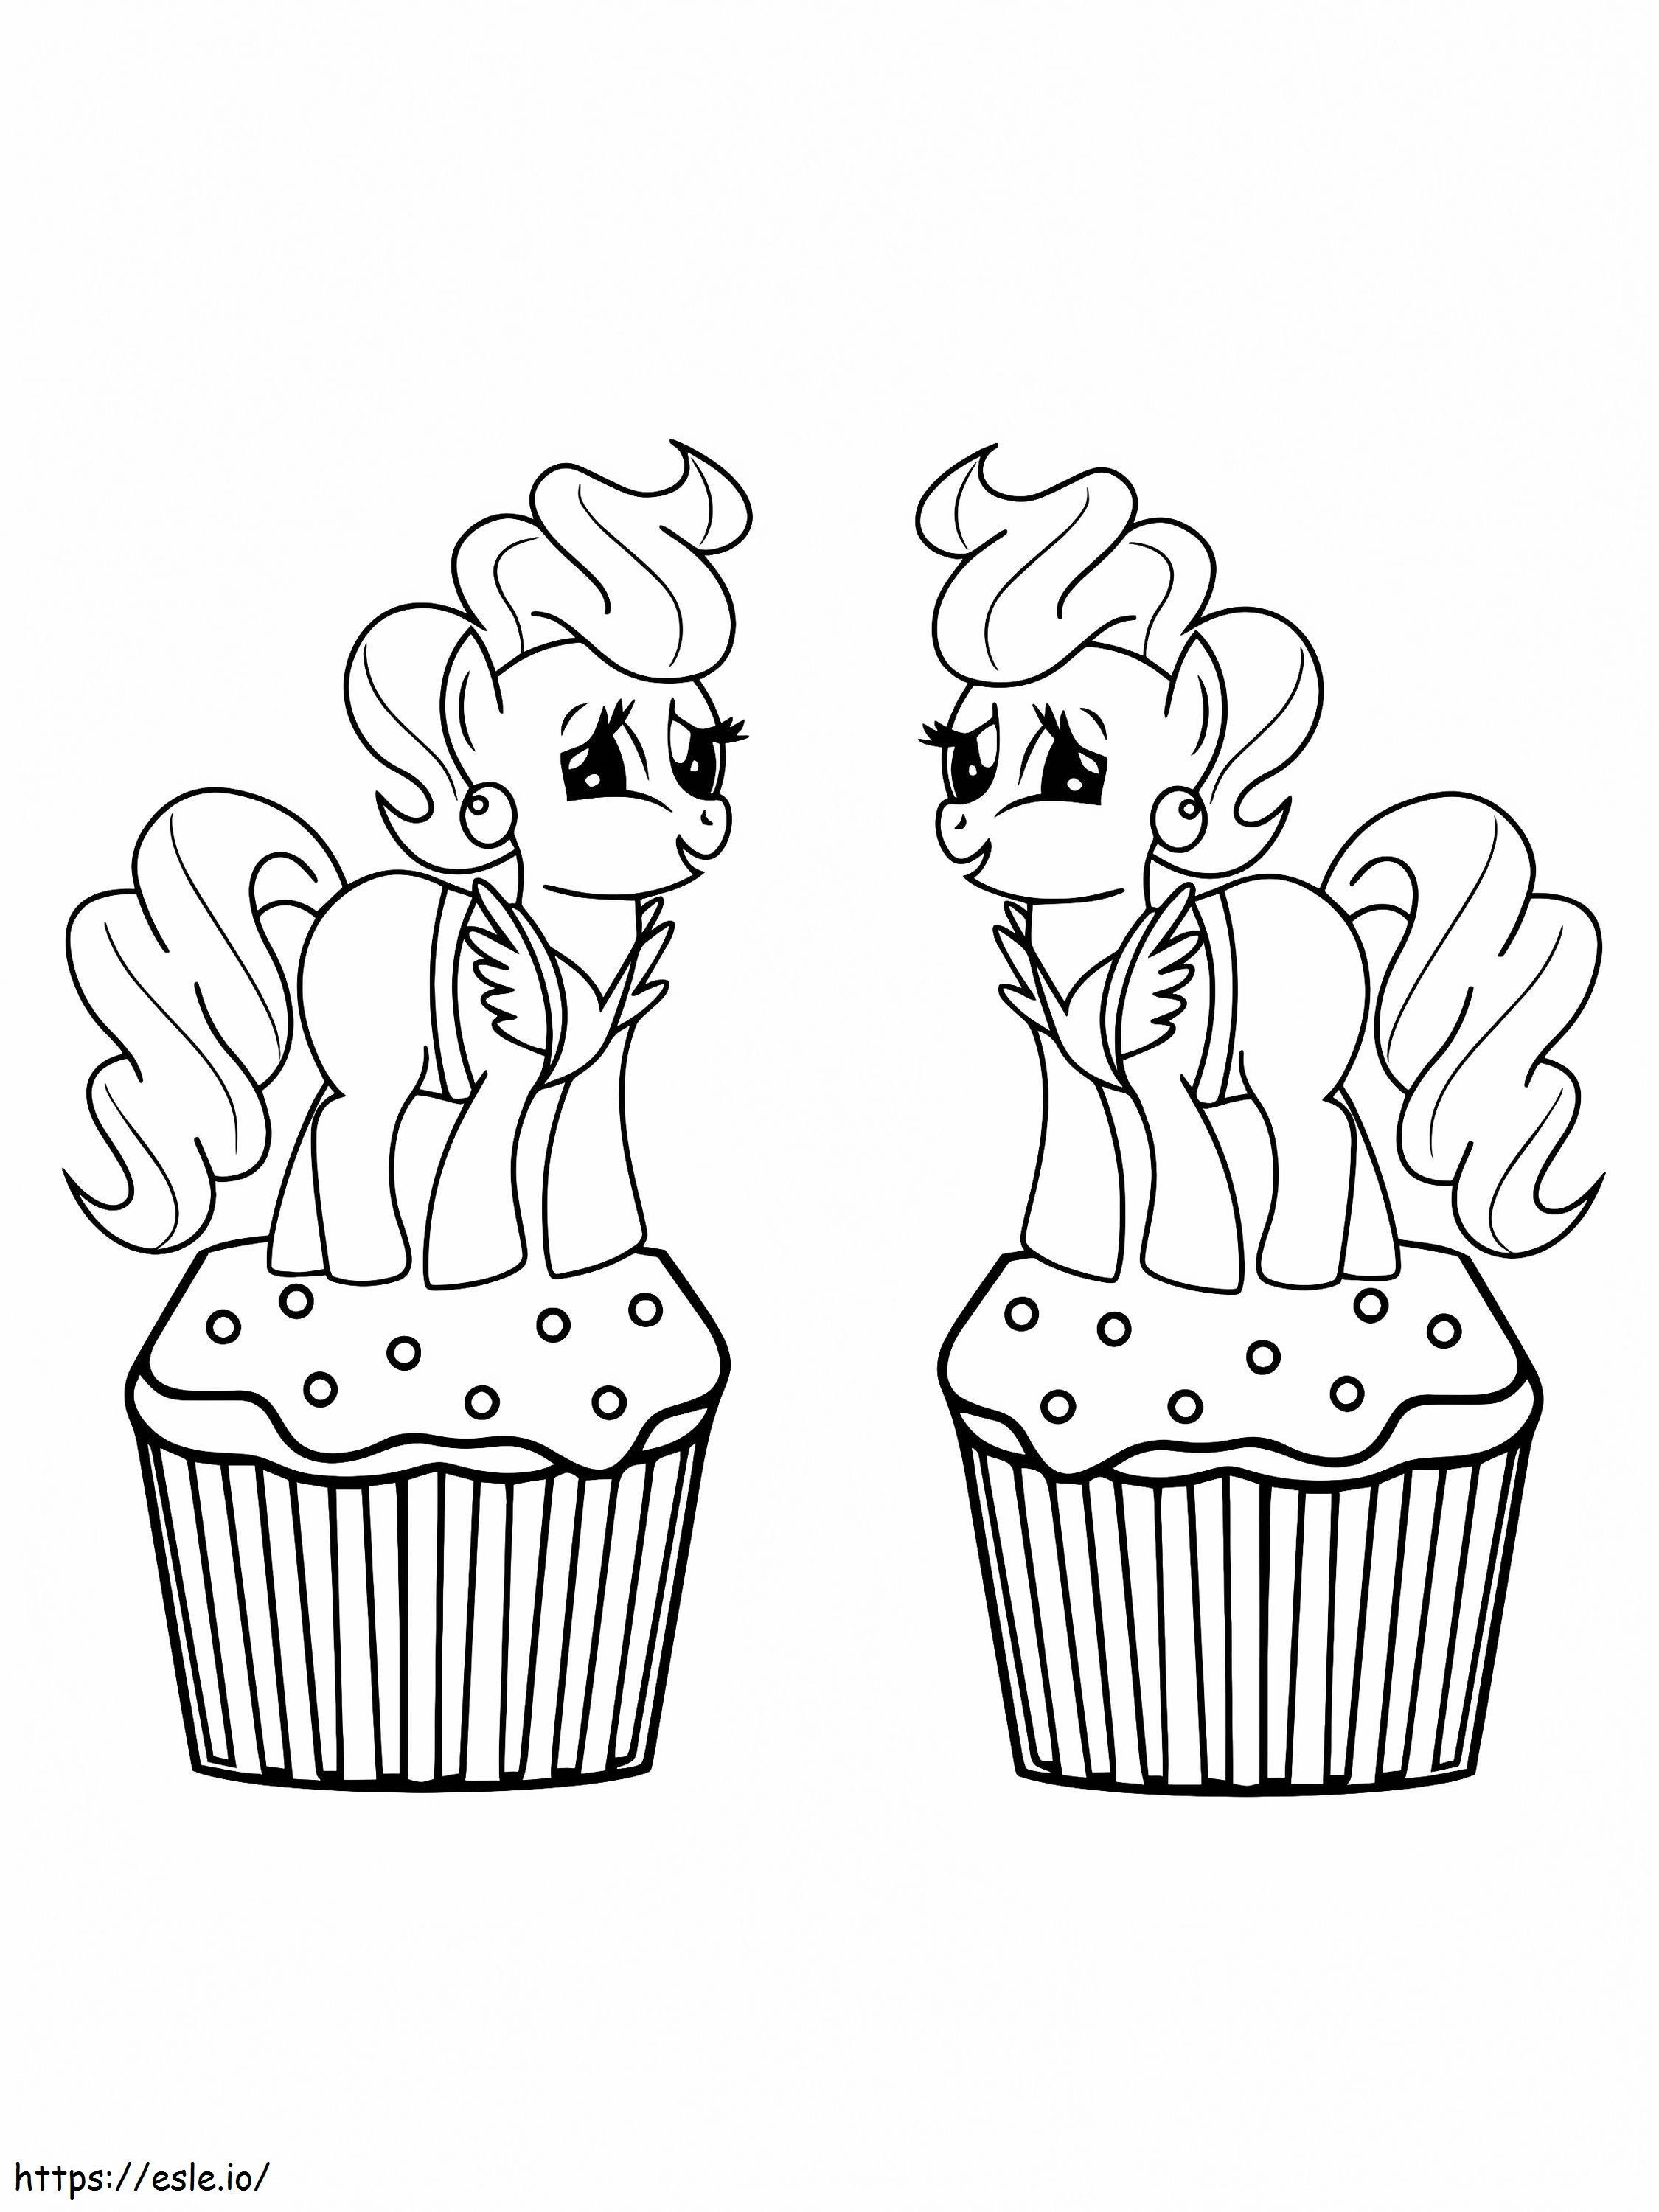 Zwei Frau Kuchen auf den Cupcakes ausmalbilder